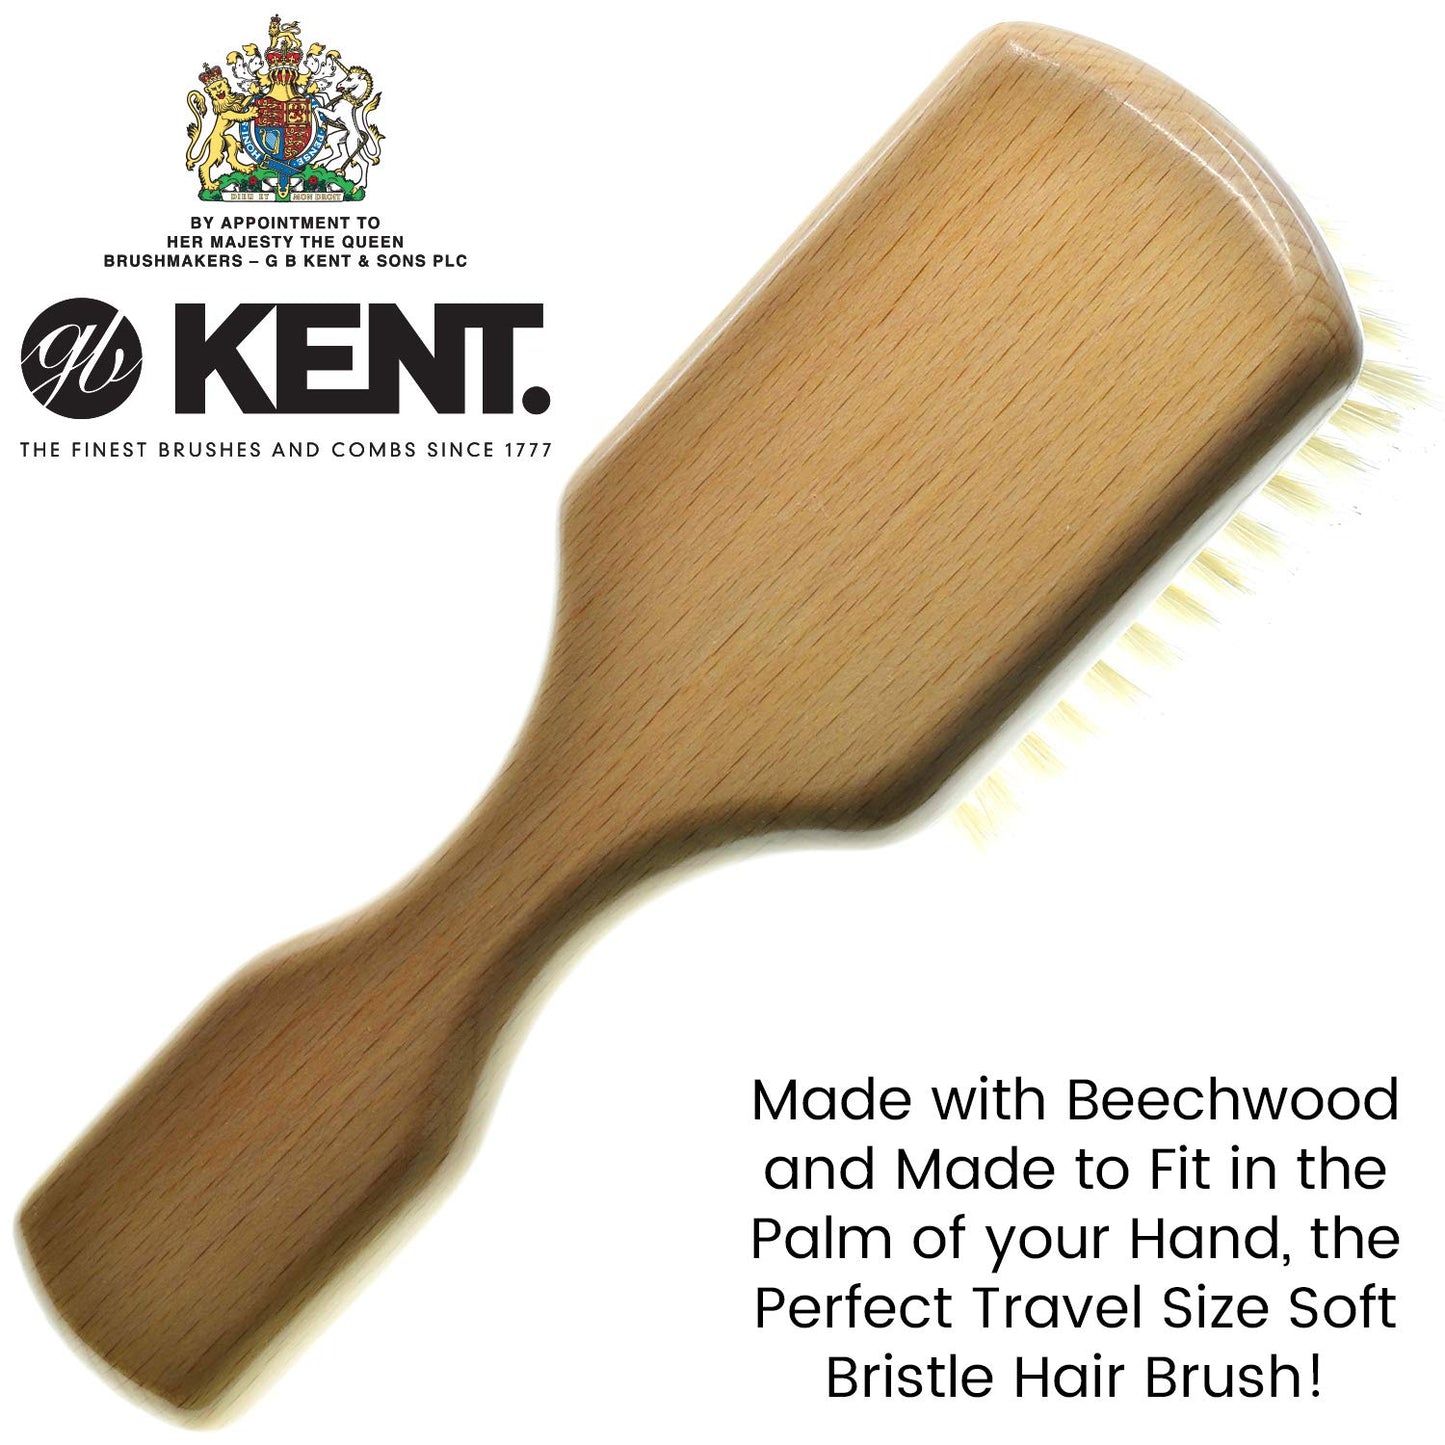 Kent OG2S Beechwood Soft Bristle Hair Brush and Facial Brush for Beard Care - Exfoliating Soft White Natural Boar Bristle Brush for Mens Grooming, Hair Care, and Beard Straightener for Men's Skin Care